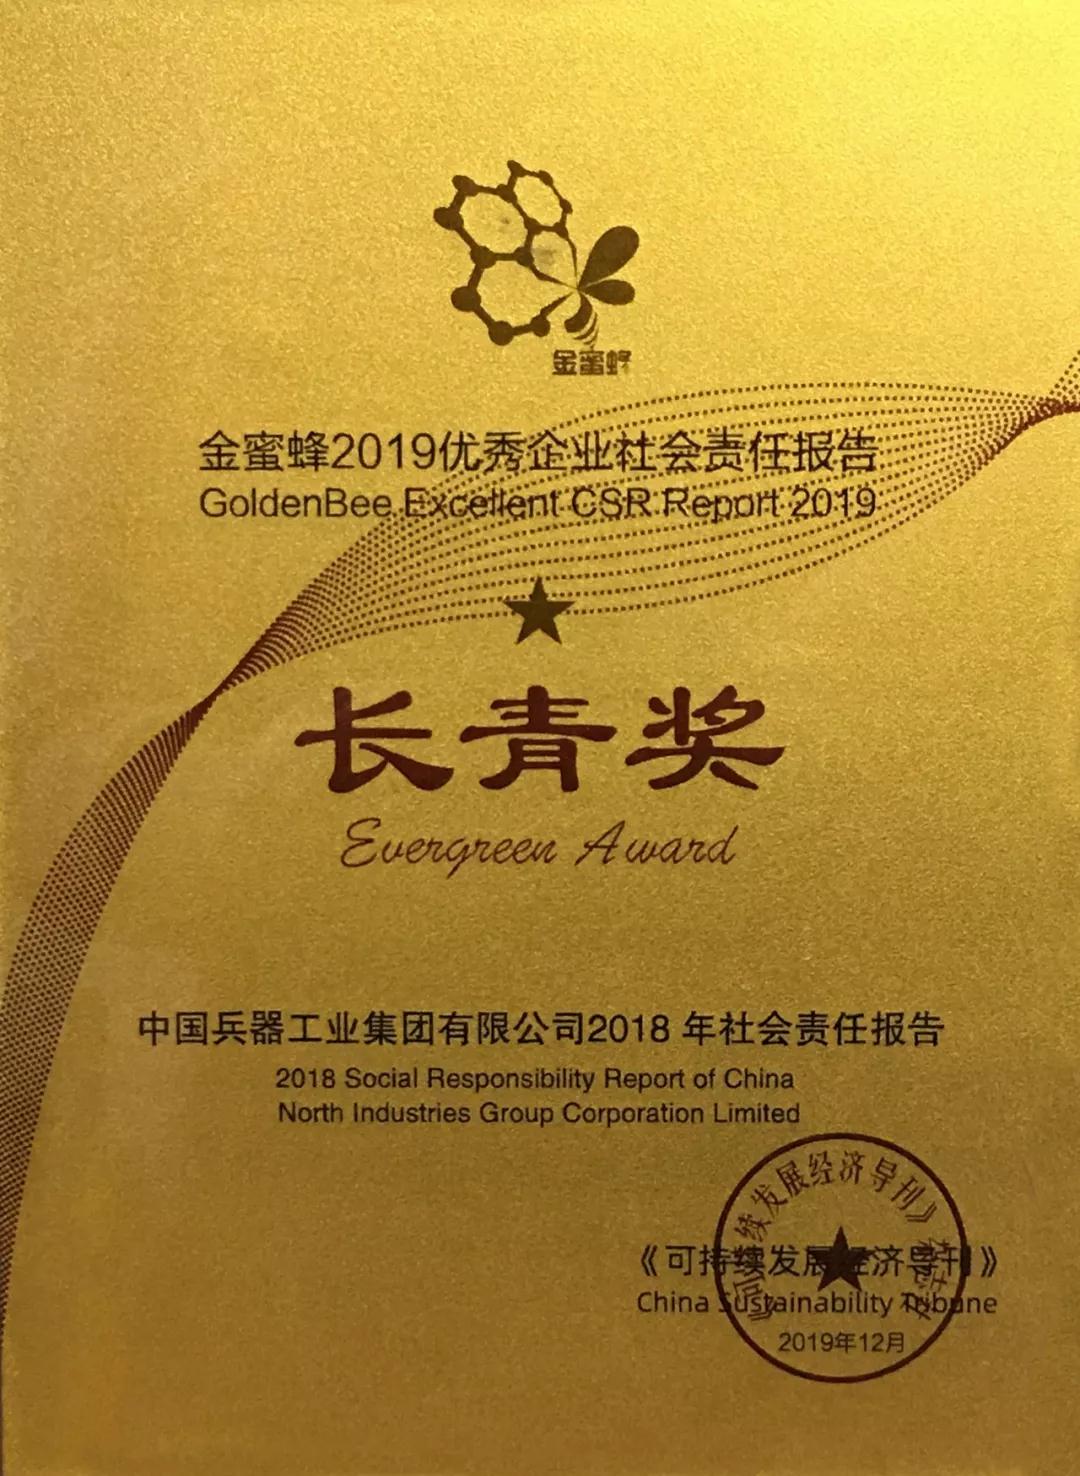 兵器工业集团社会责任报告再获“金蜜蜂优秀企业社会责任报告·长青奖”